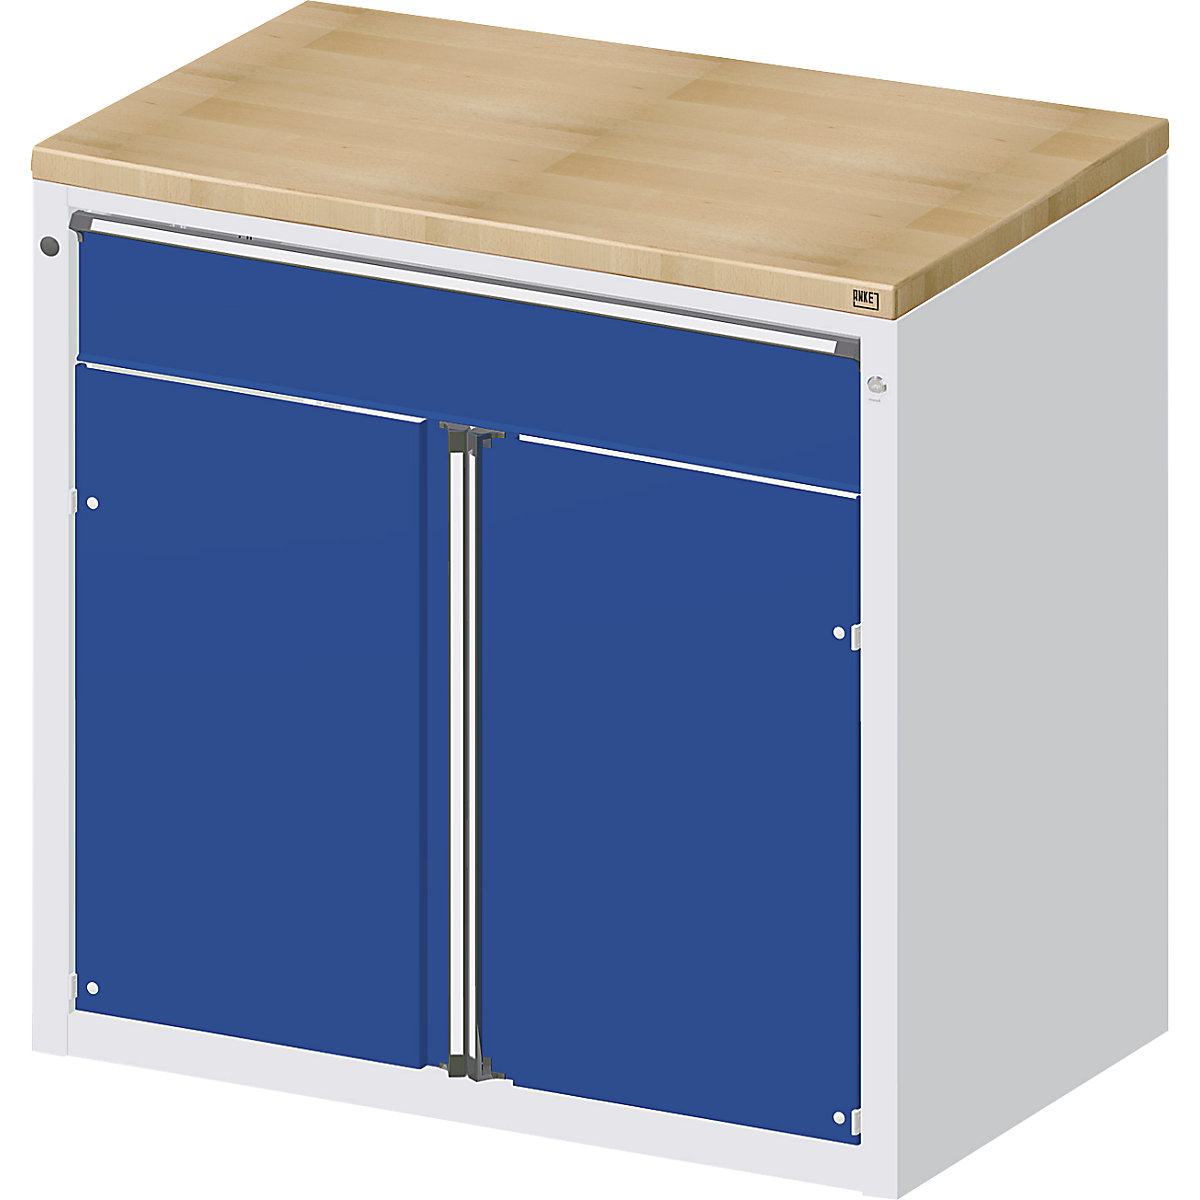 ANKE – Armario para mostrador para dispensar herramientas y material, 1 cajón, 2 puertas, 1 balda, gris / azul